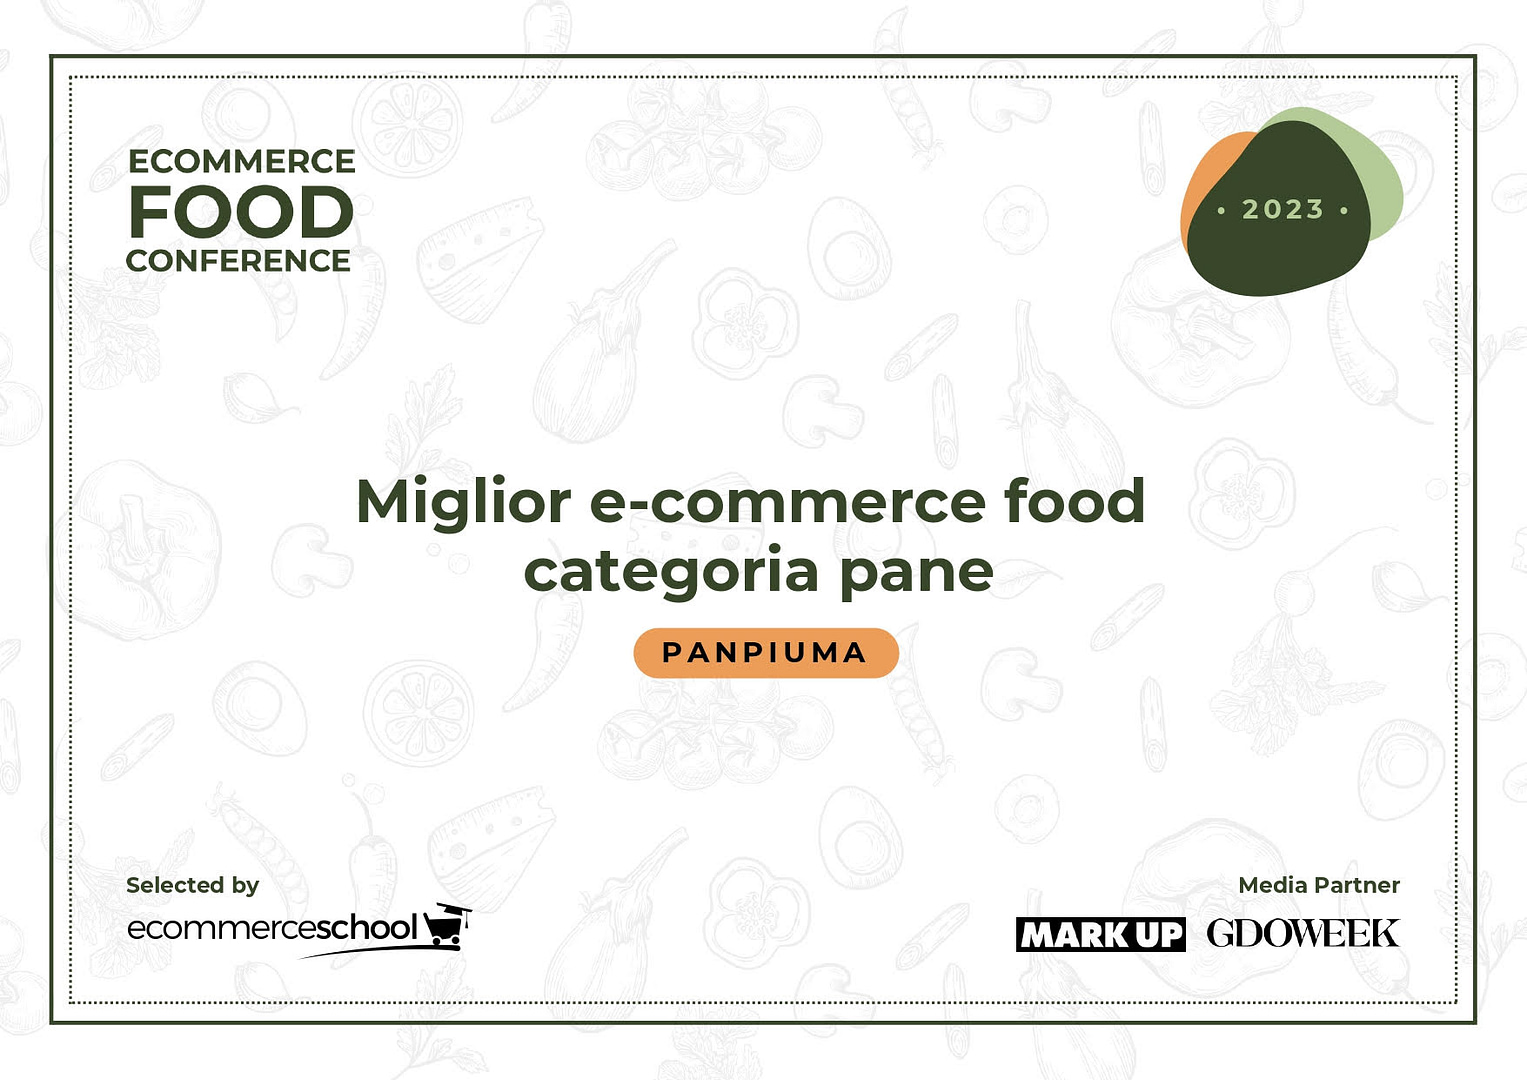 Pan Piuma conquista il premio  “Miglior E-commerce Food Categoria Pane” 2023